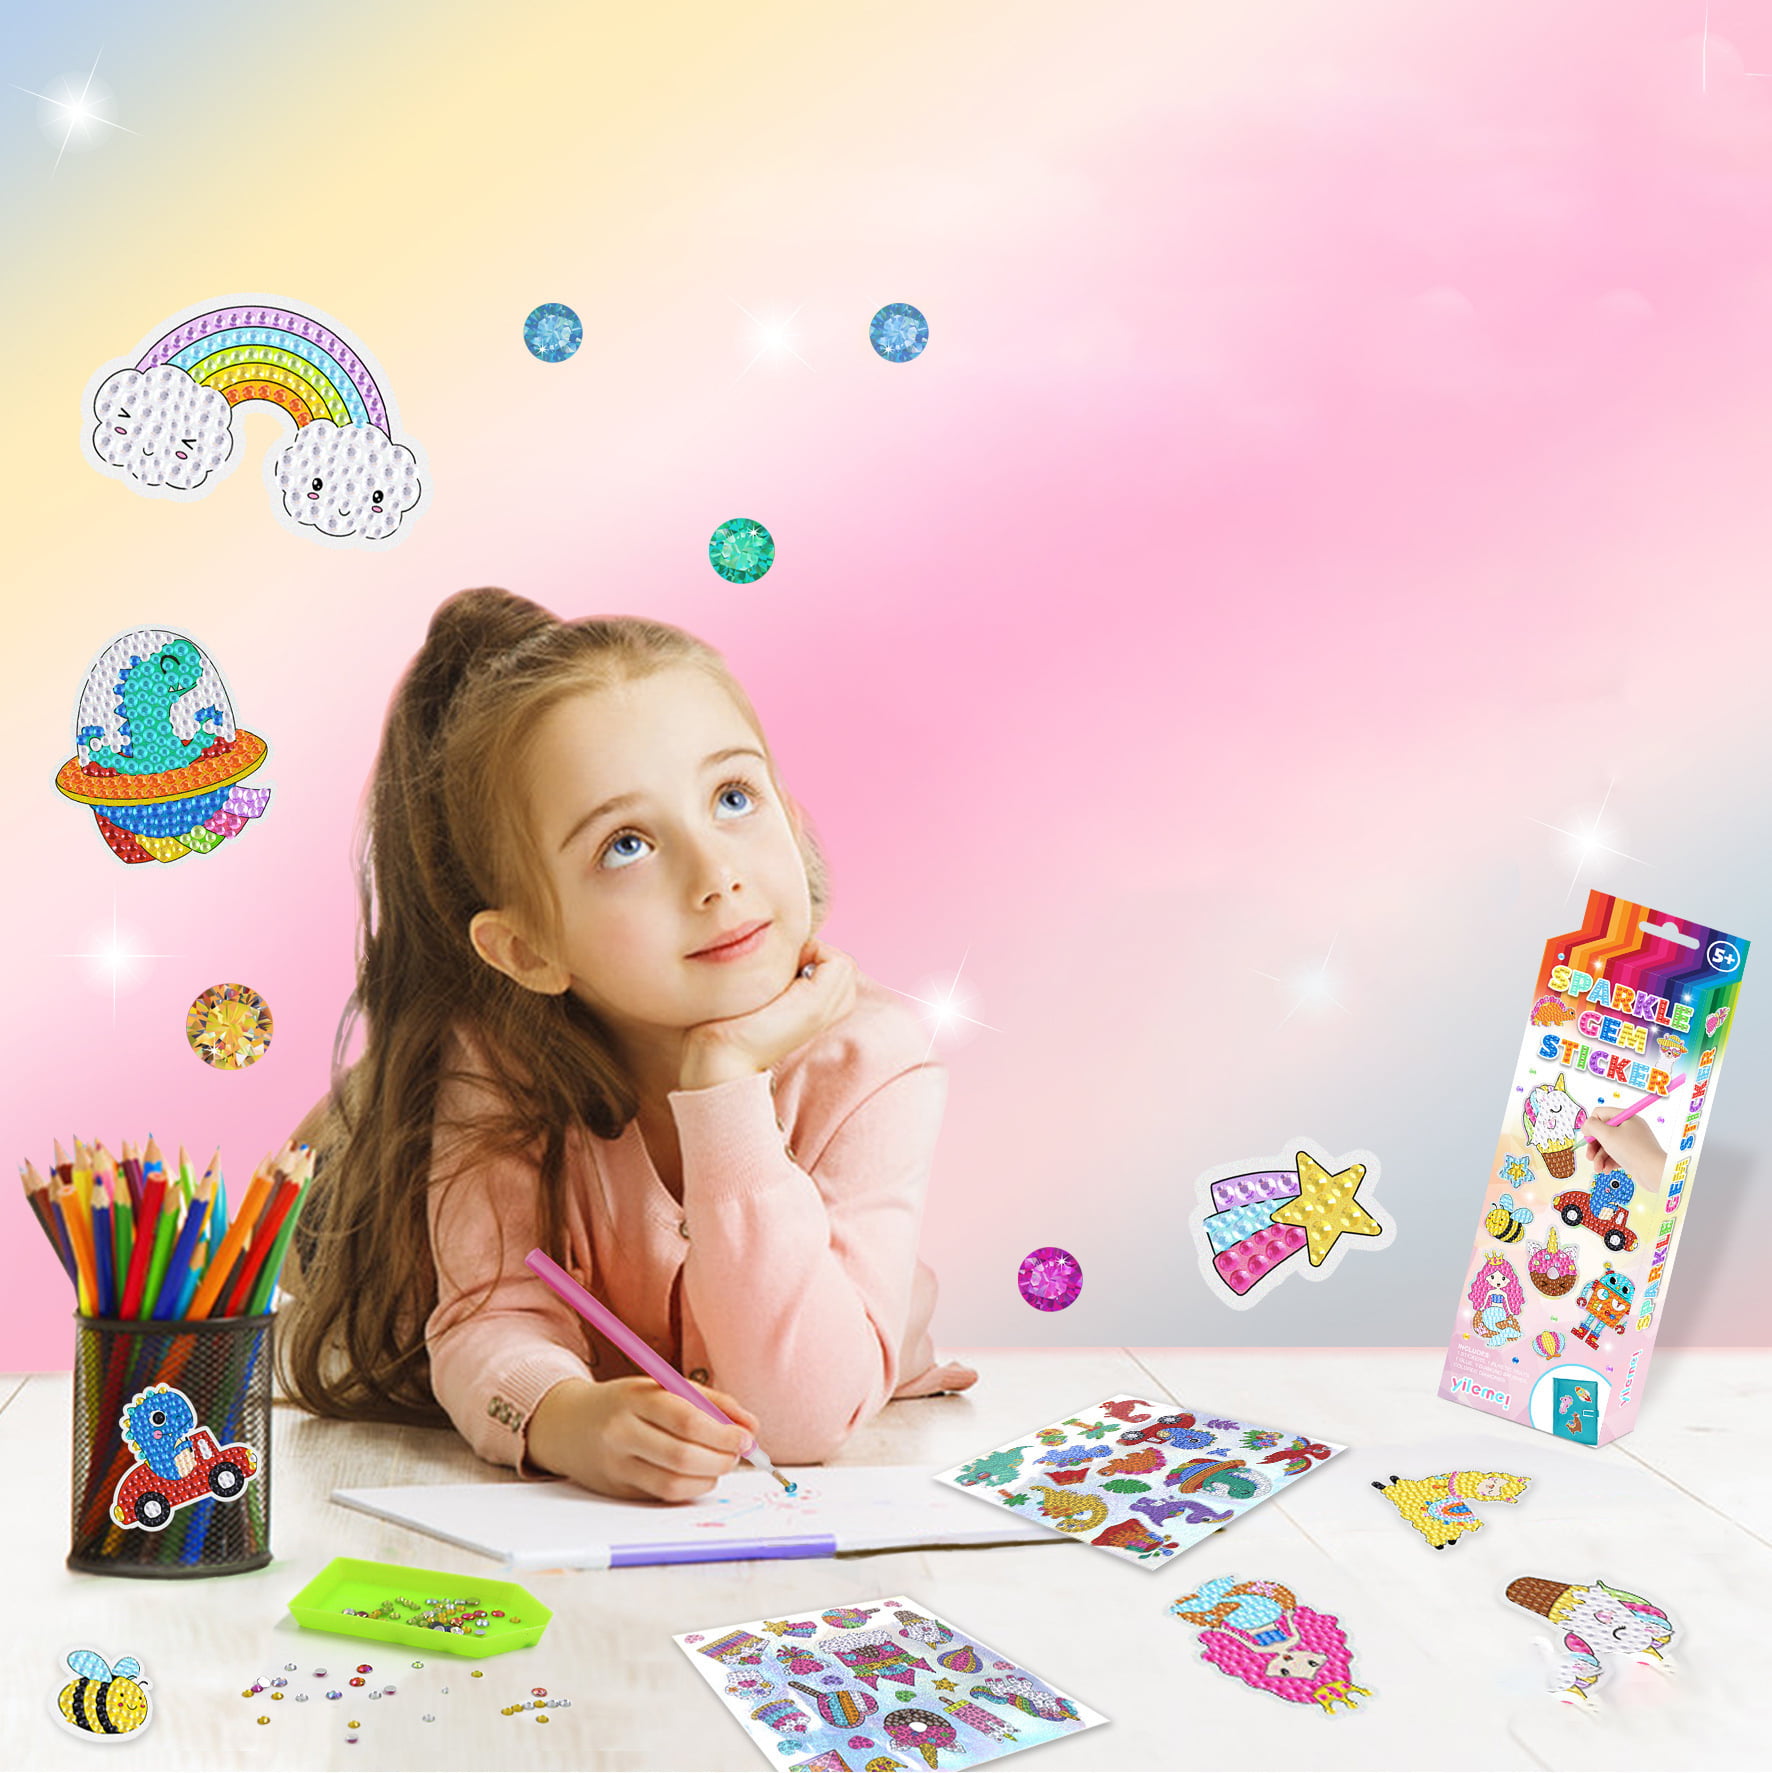 Gem Diamond Painting Kit For Kids, Handmade Diamond Painting 5D